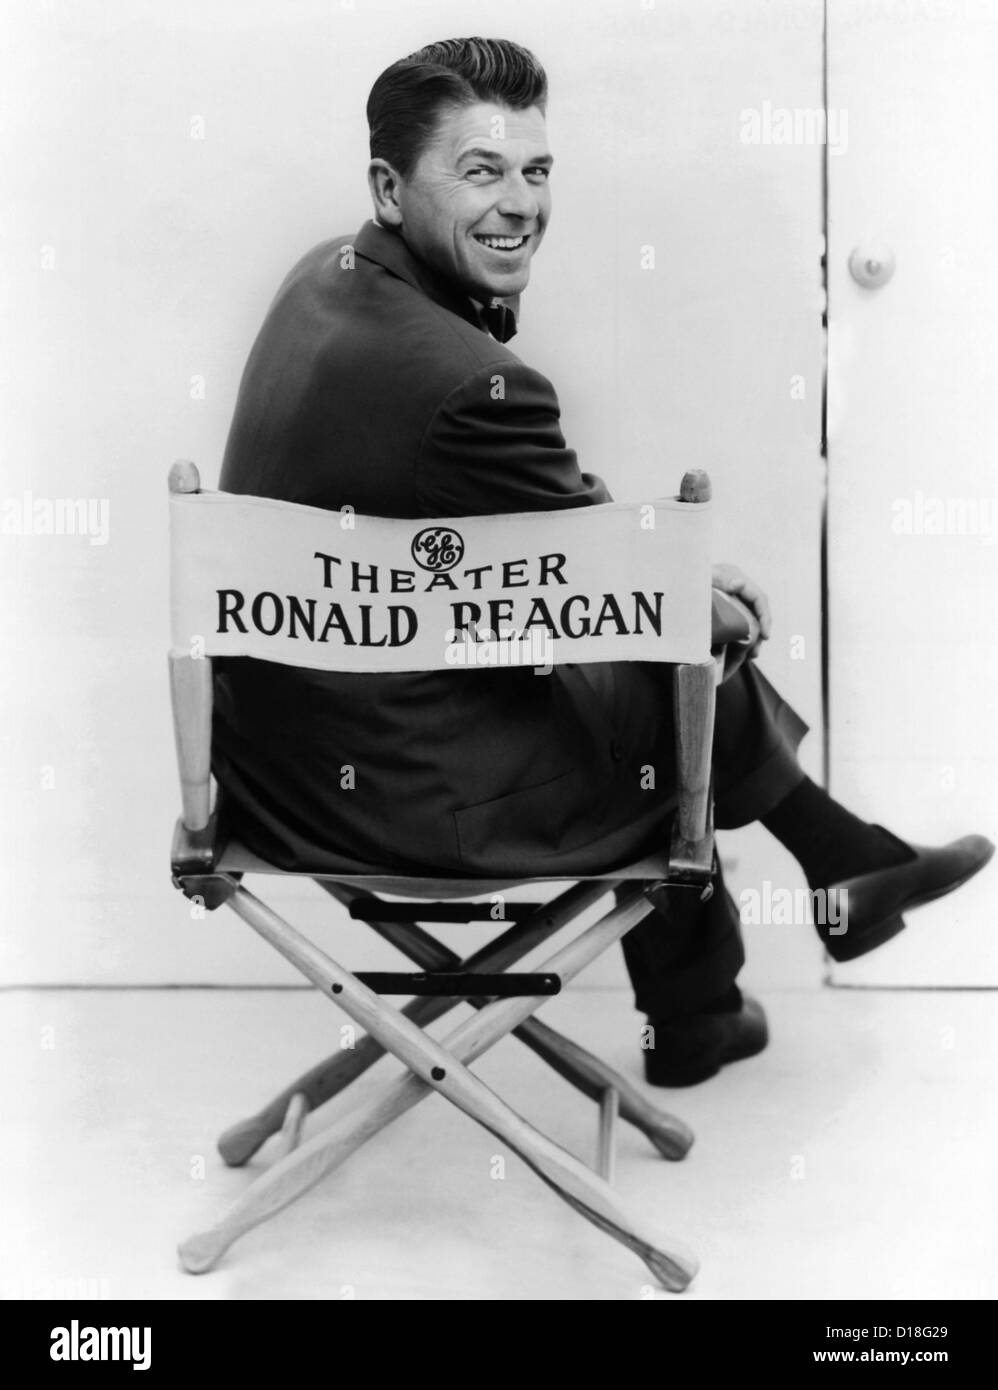 Ronald Reagan a été hôte de la General Electric Theatre sur télévision CBS à partir de 1954-1962.   CSU (ALPHA 438) Archives CSU/Everett Banque D'Images